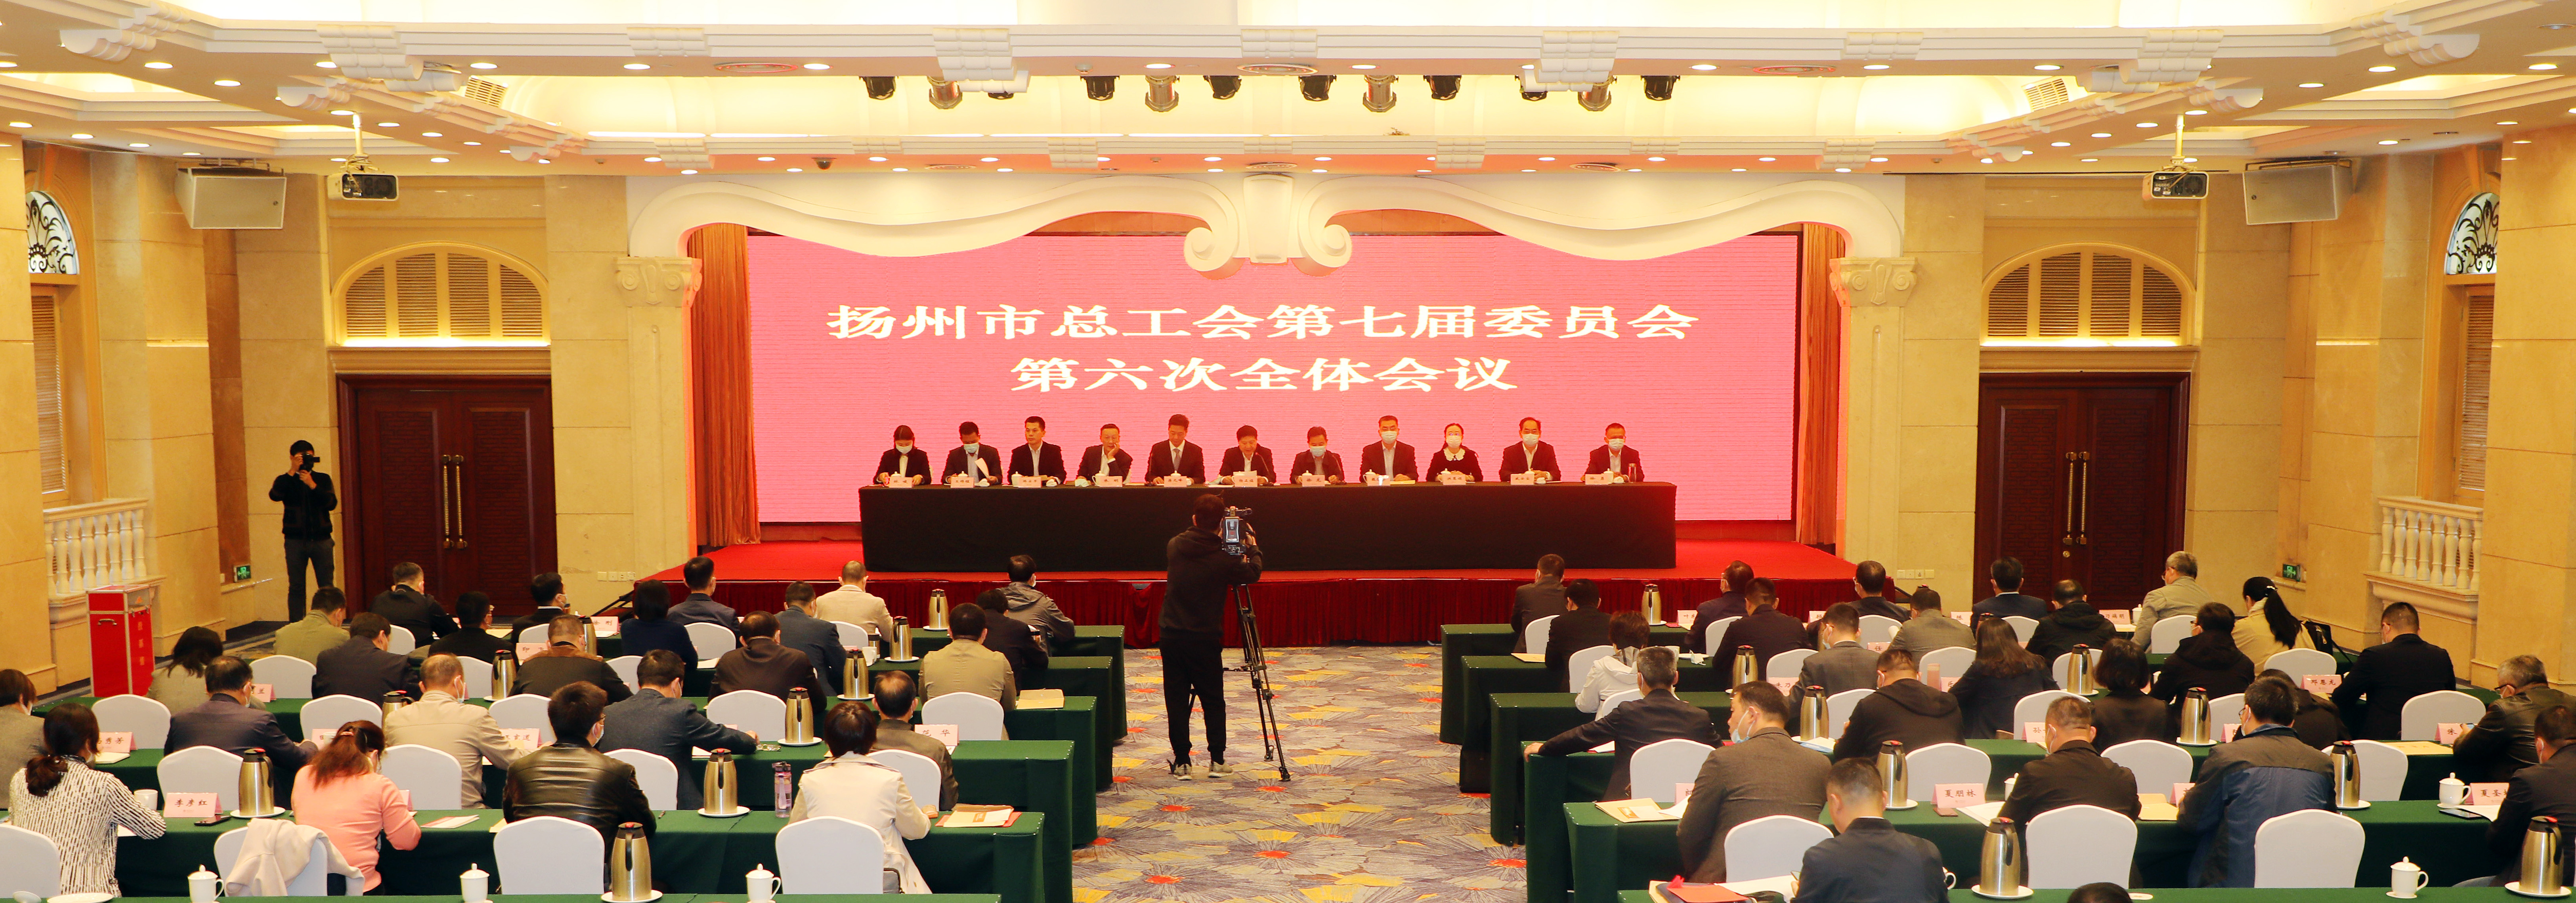 市总工会召开七届六次全体会议  蒋元峰当选市总工会副主席